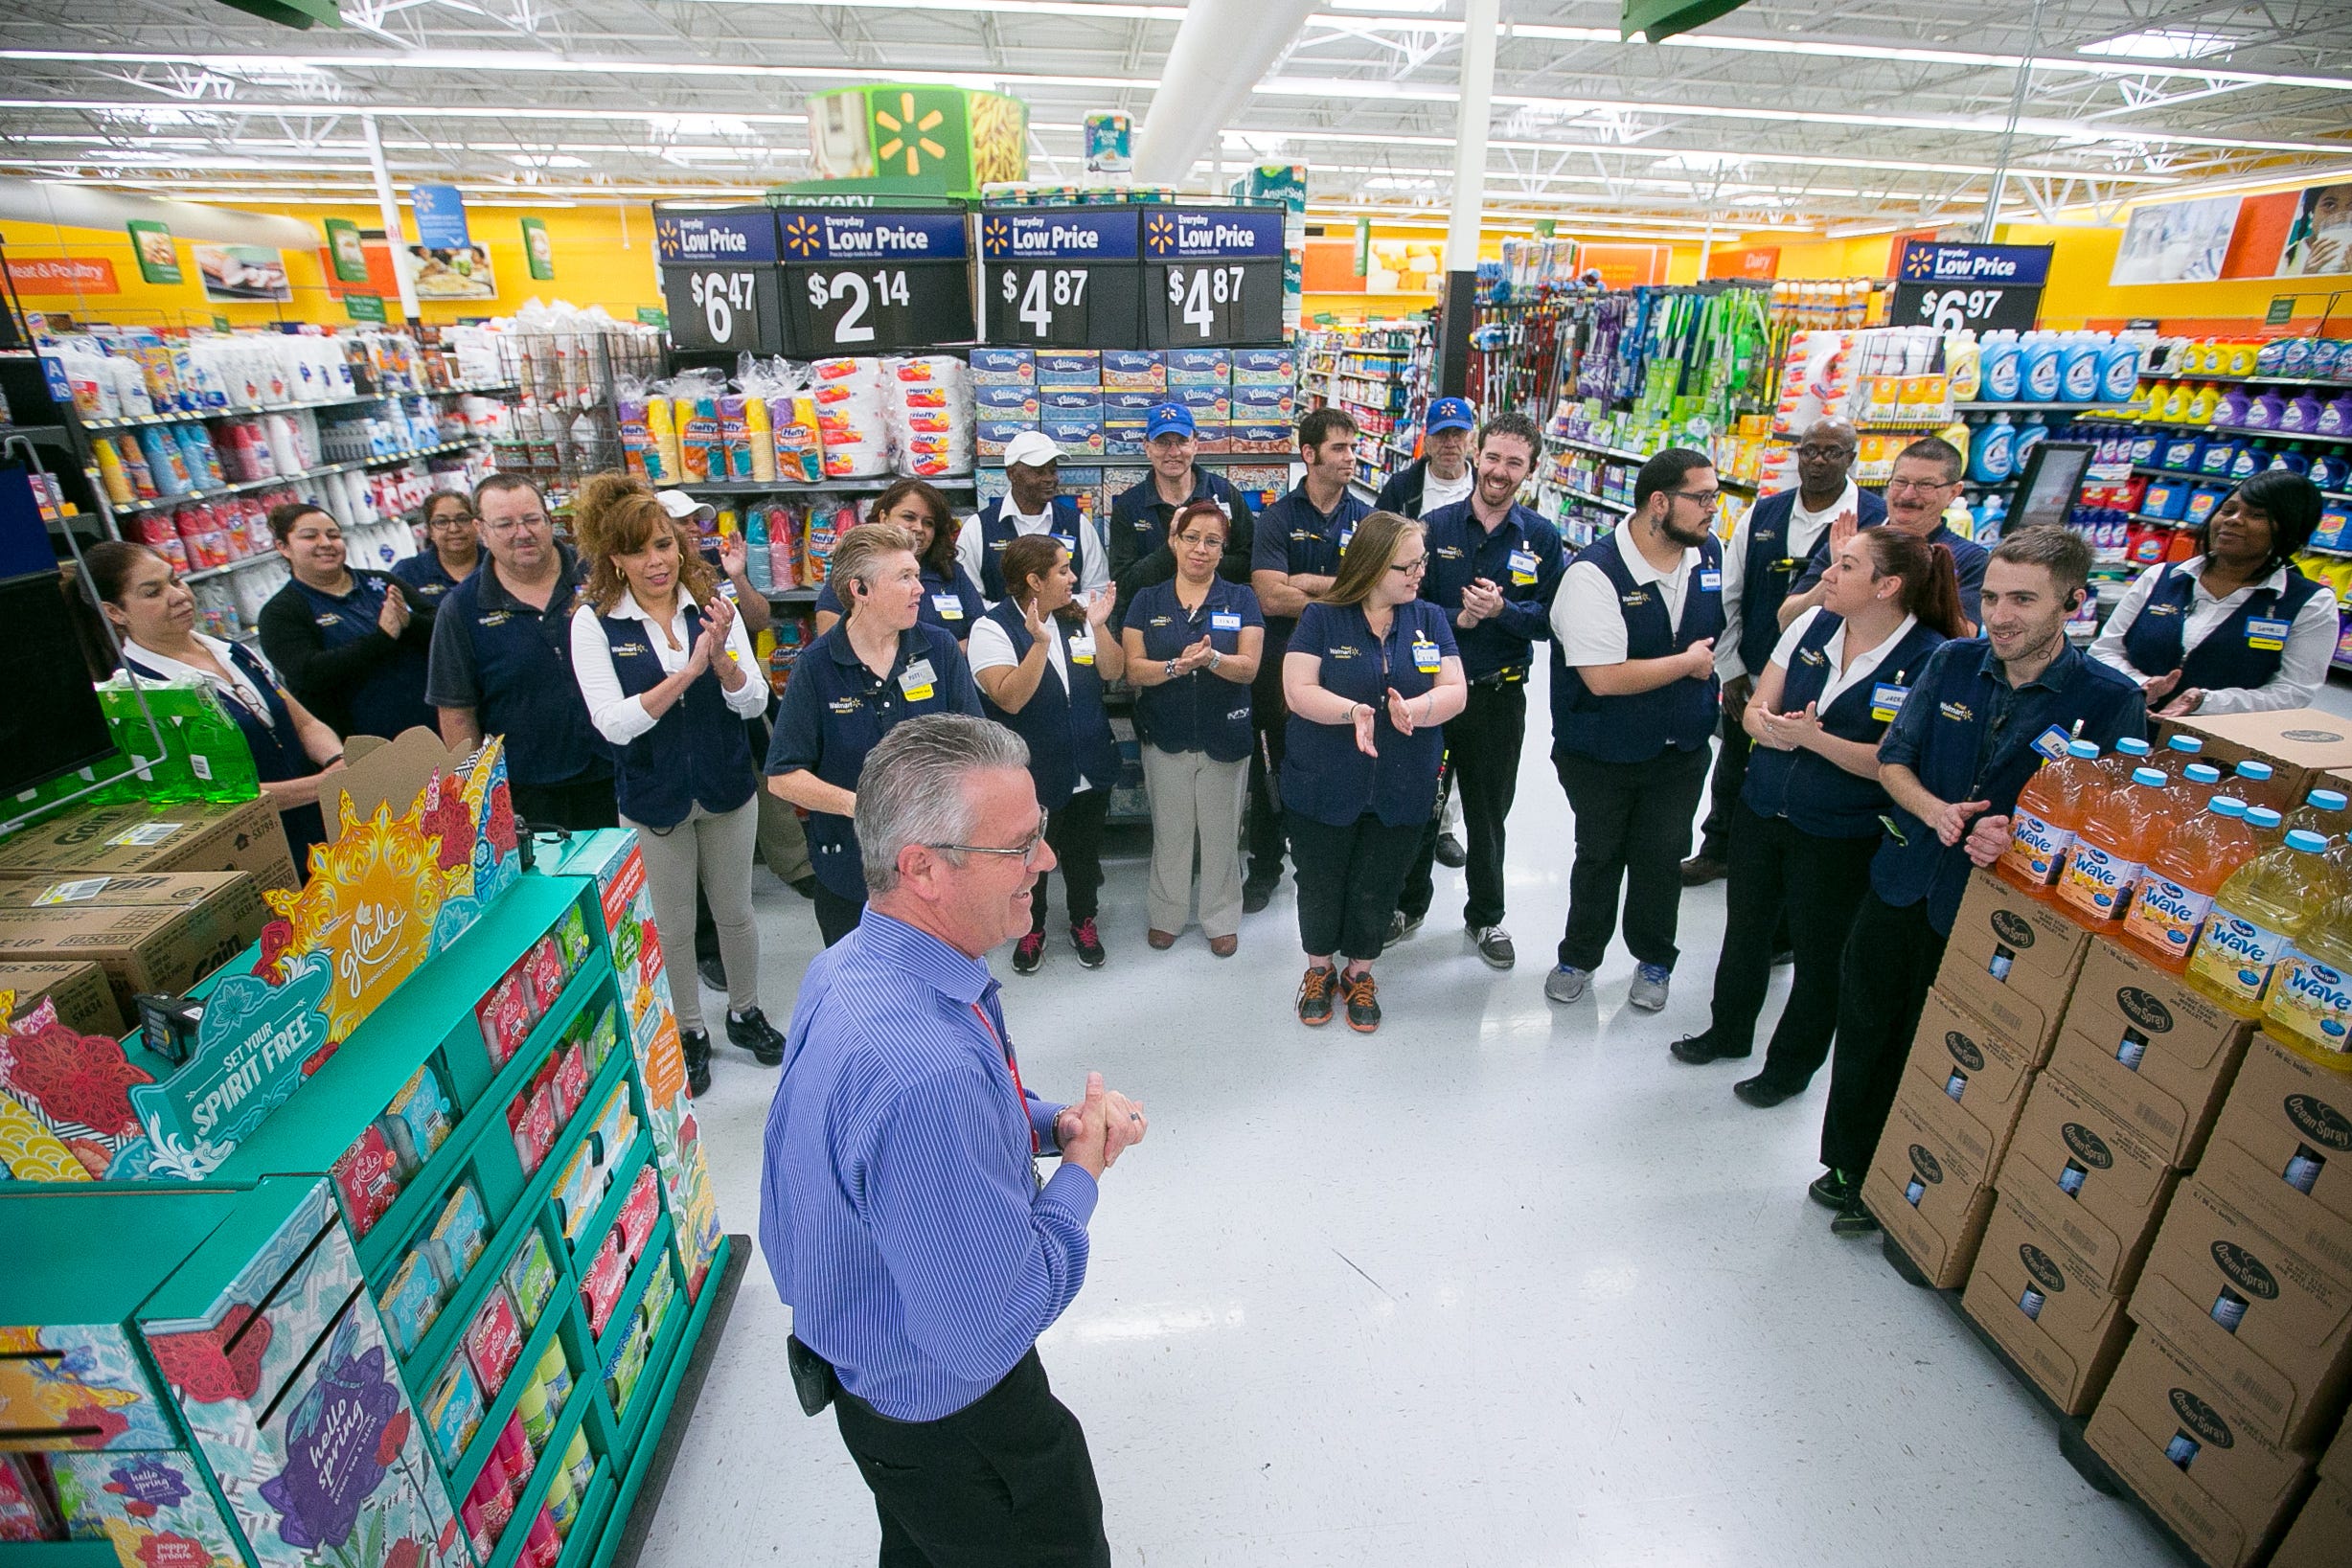 100,000 Walmart managers get a raise - Jun. 2, 2015